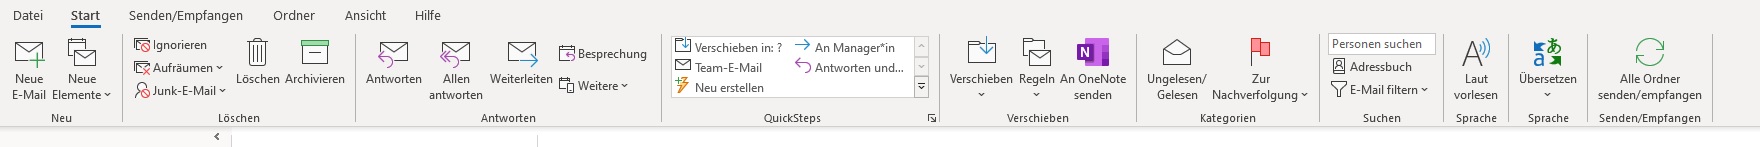 Button "Kategorien" fehlt Outlook Menüleiste.jpg